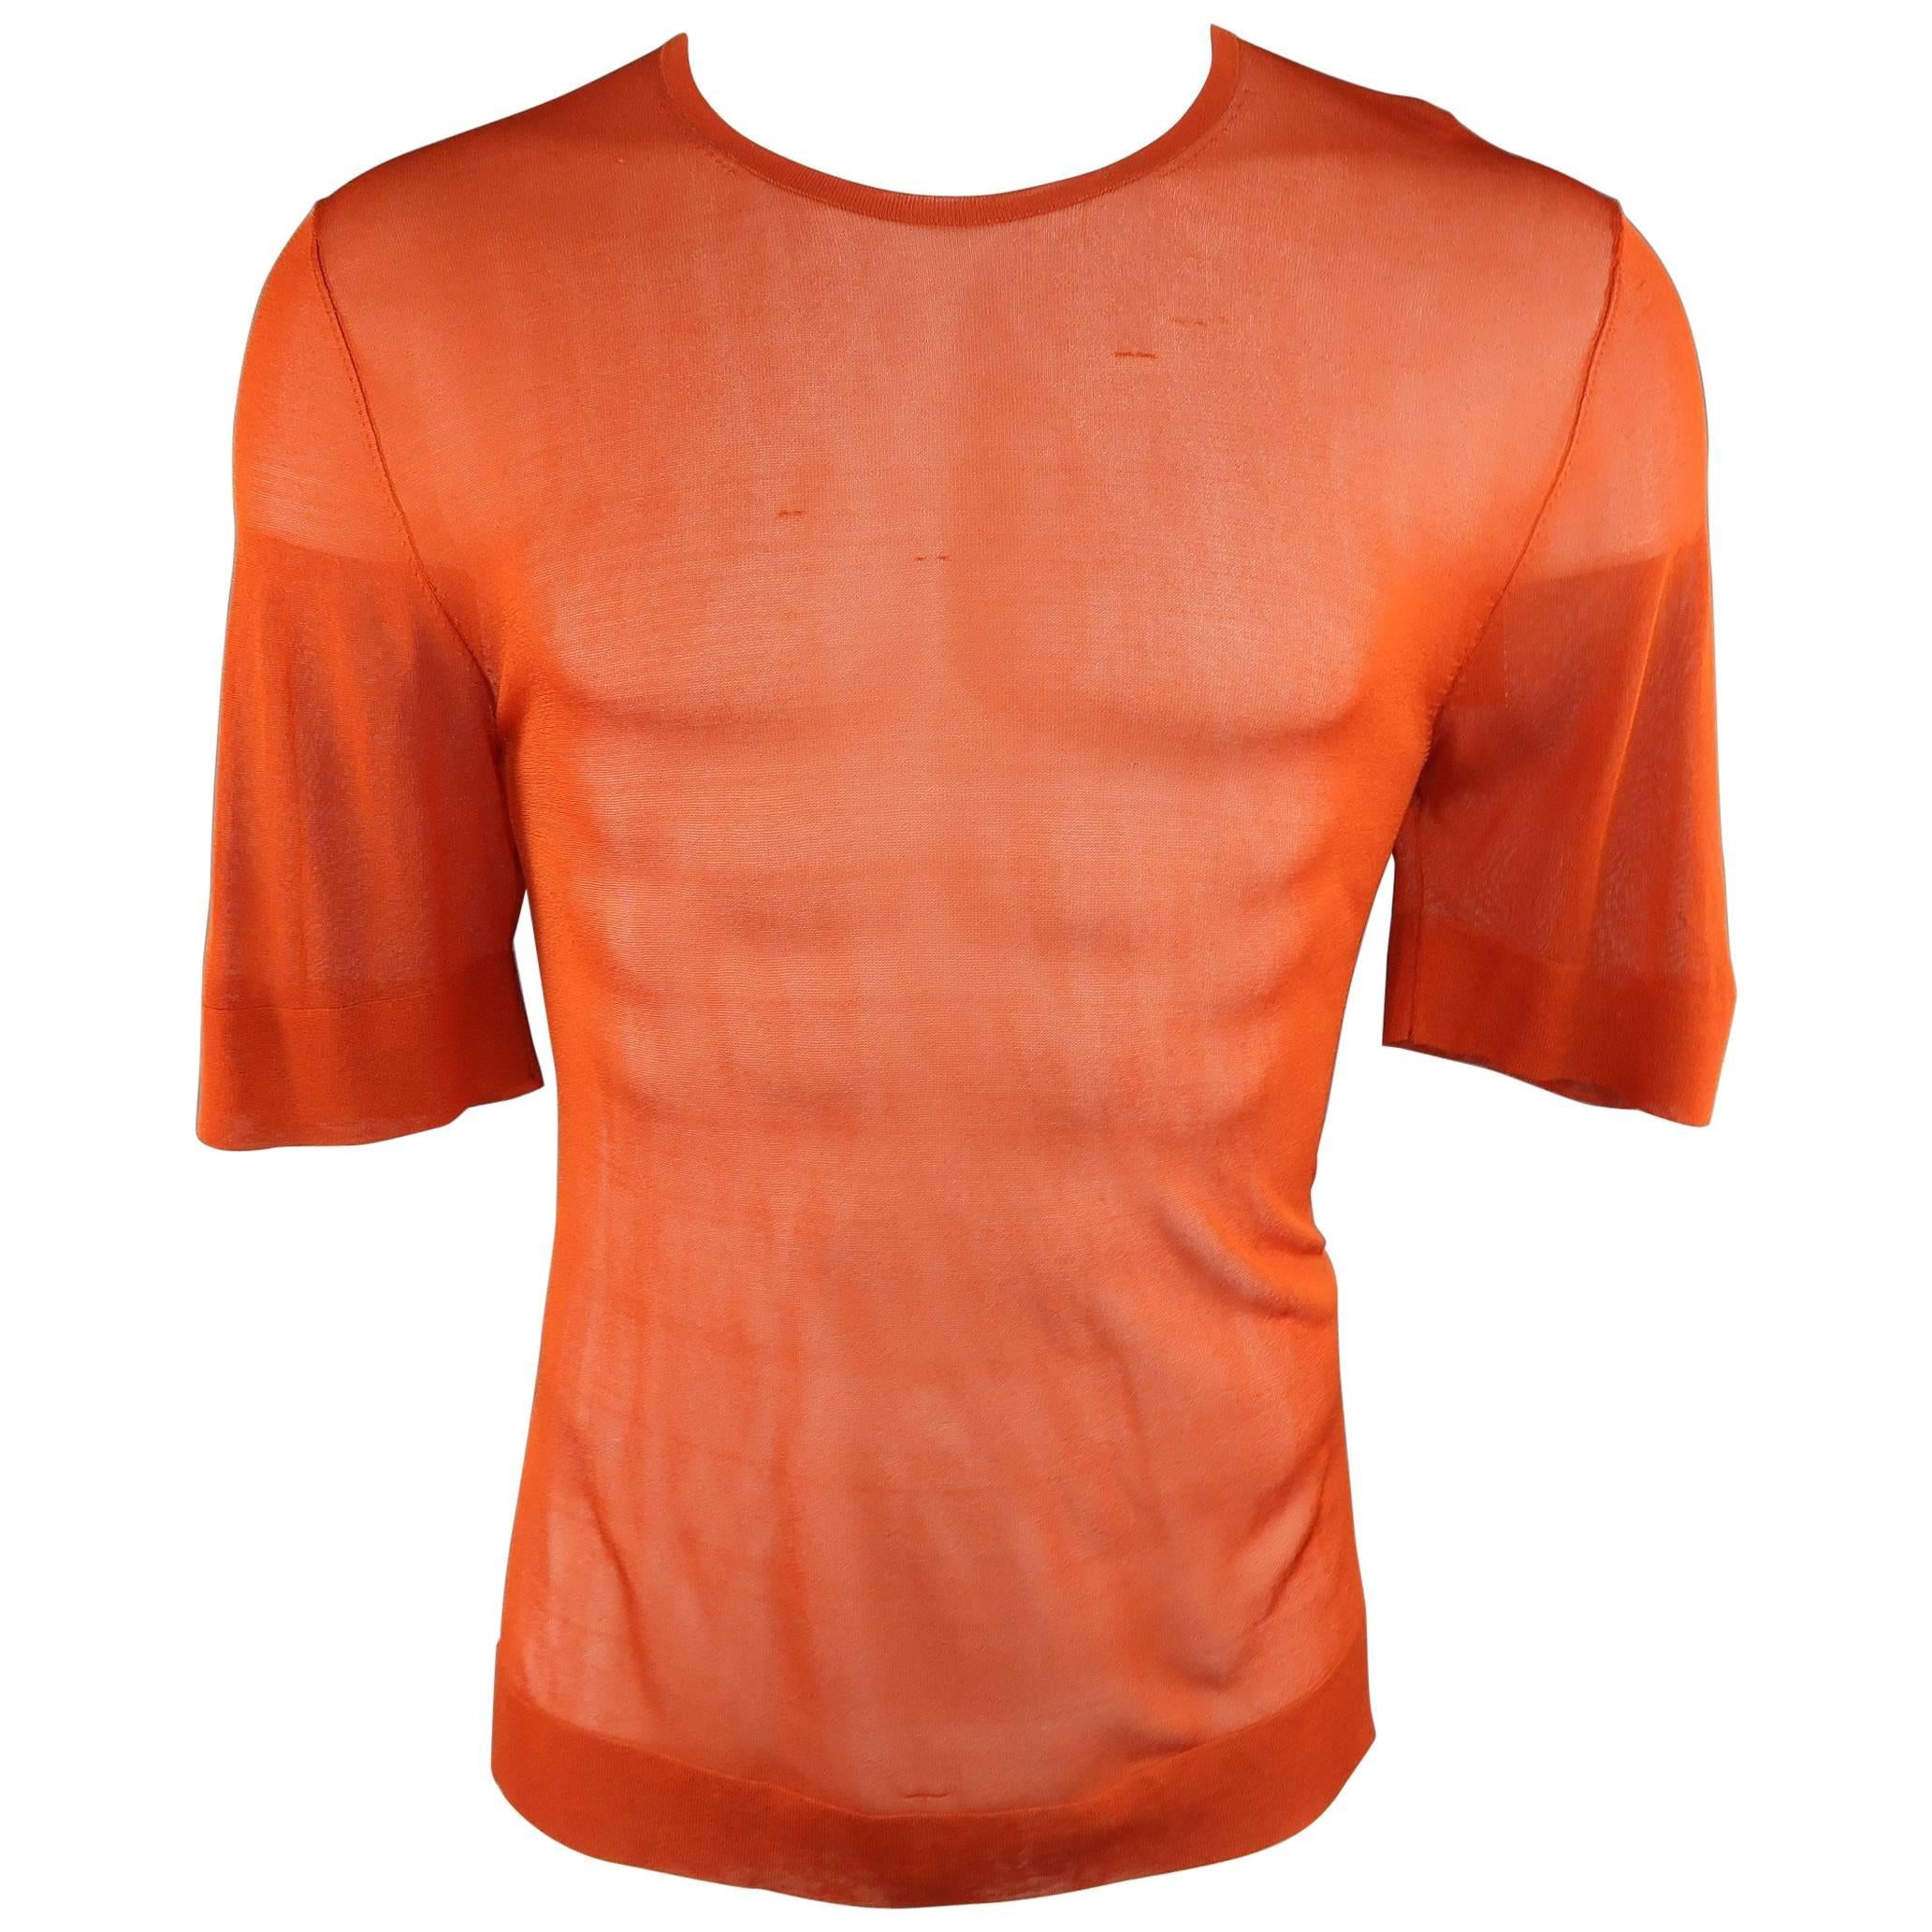 Men's DRIES VAN NOTEN Size L Brick Orange Metallic Sheer Mesh Knit T-shirt